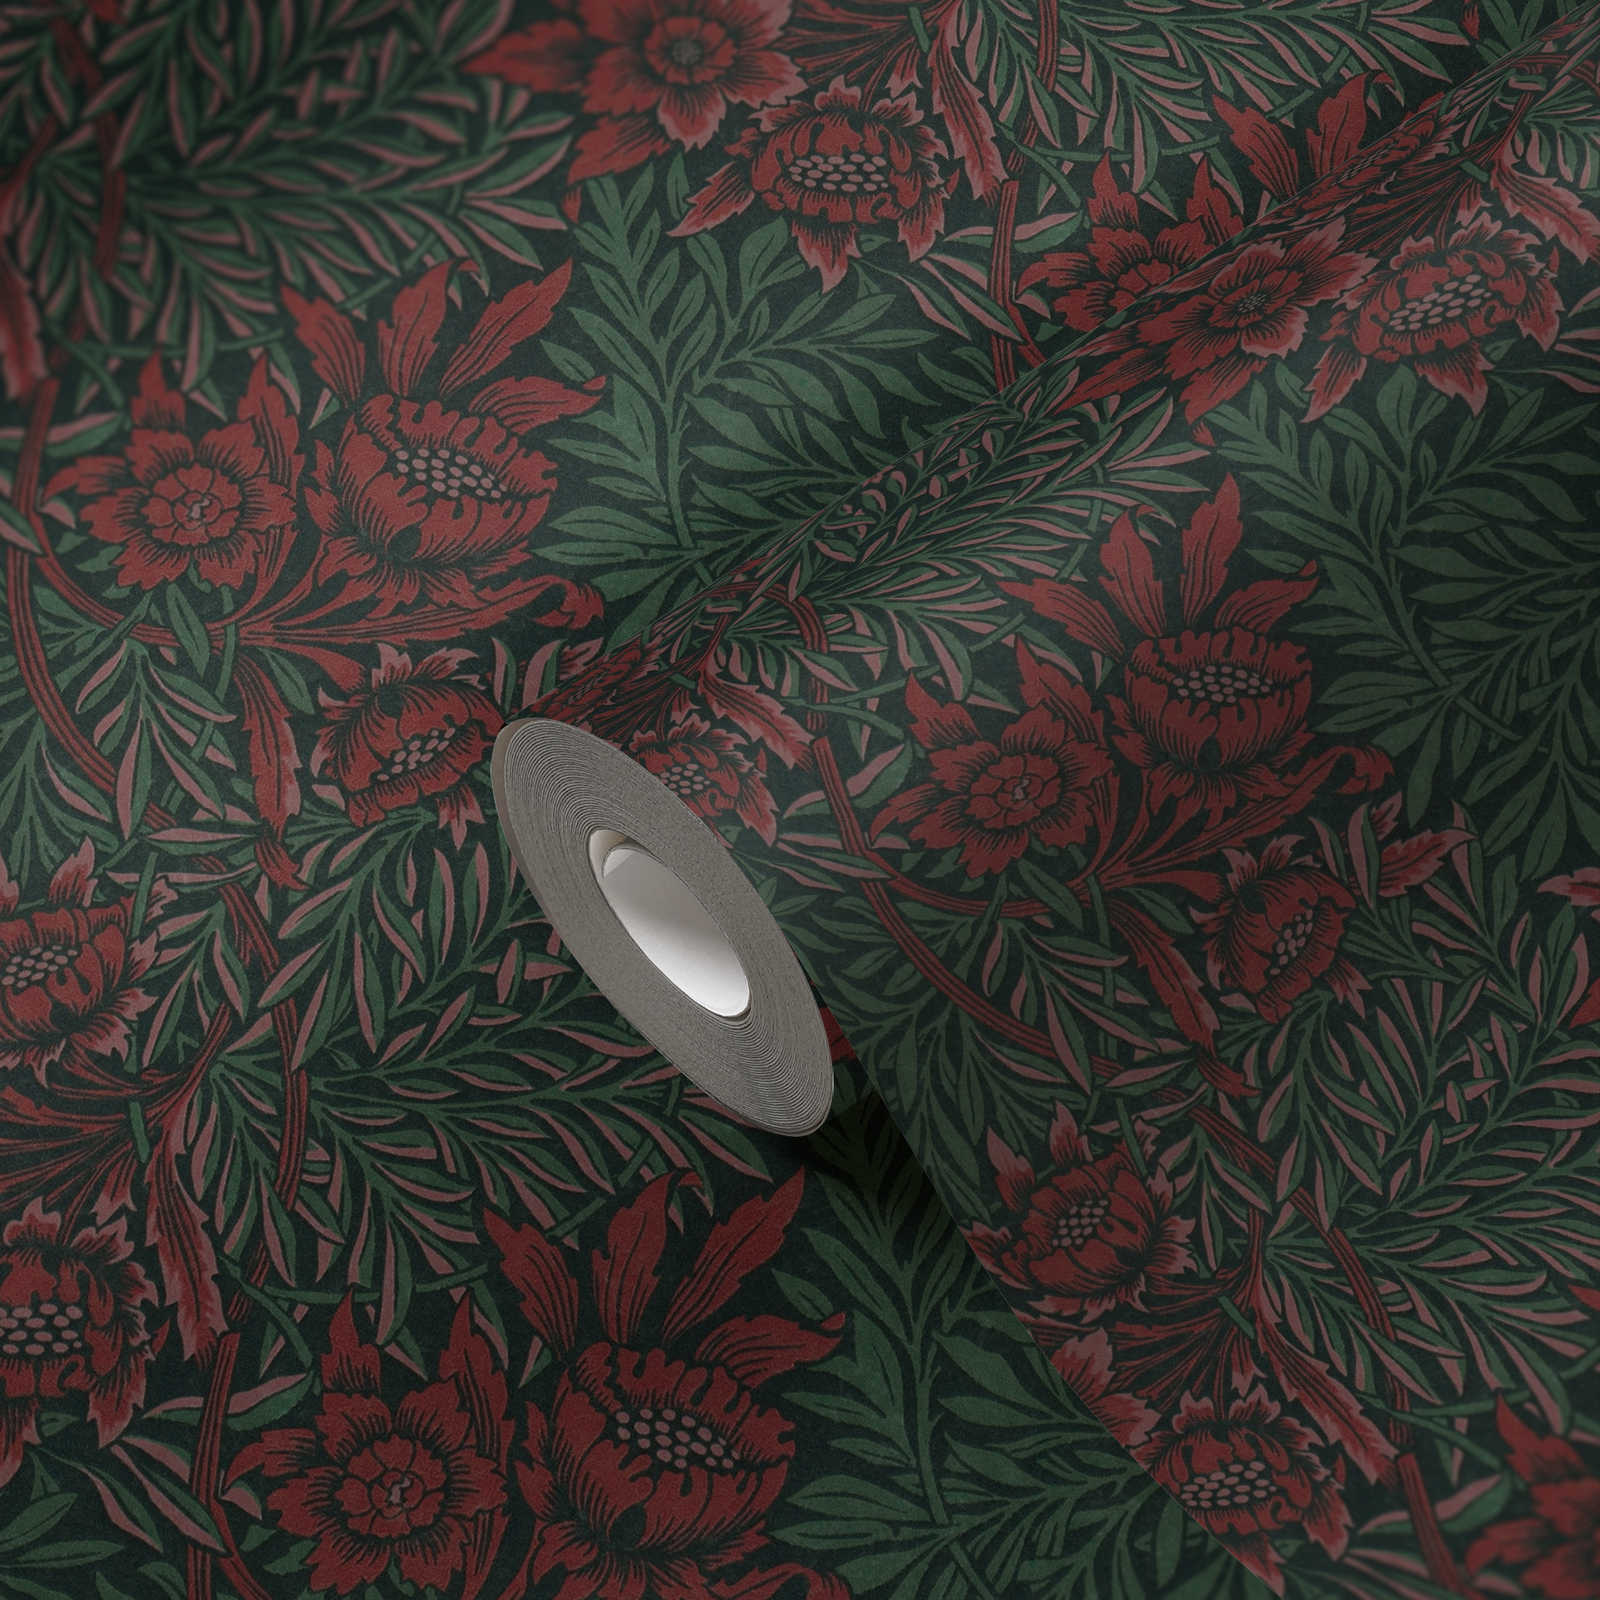             Vliestapete mit floralem Muster große Blüte und Ranken – Grün, Rot, Schwarz
        